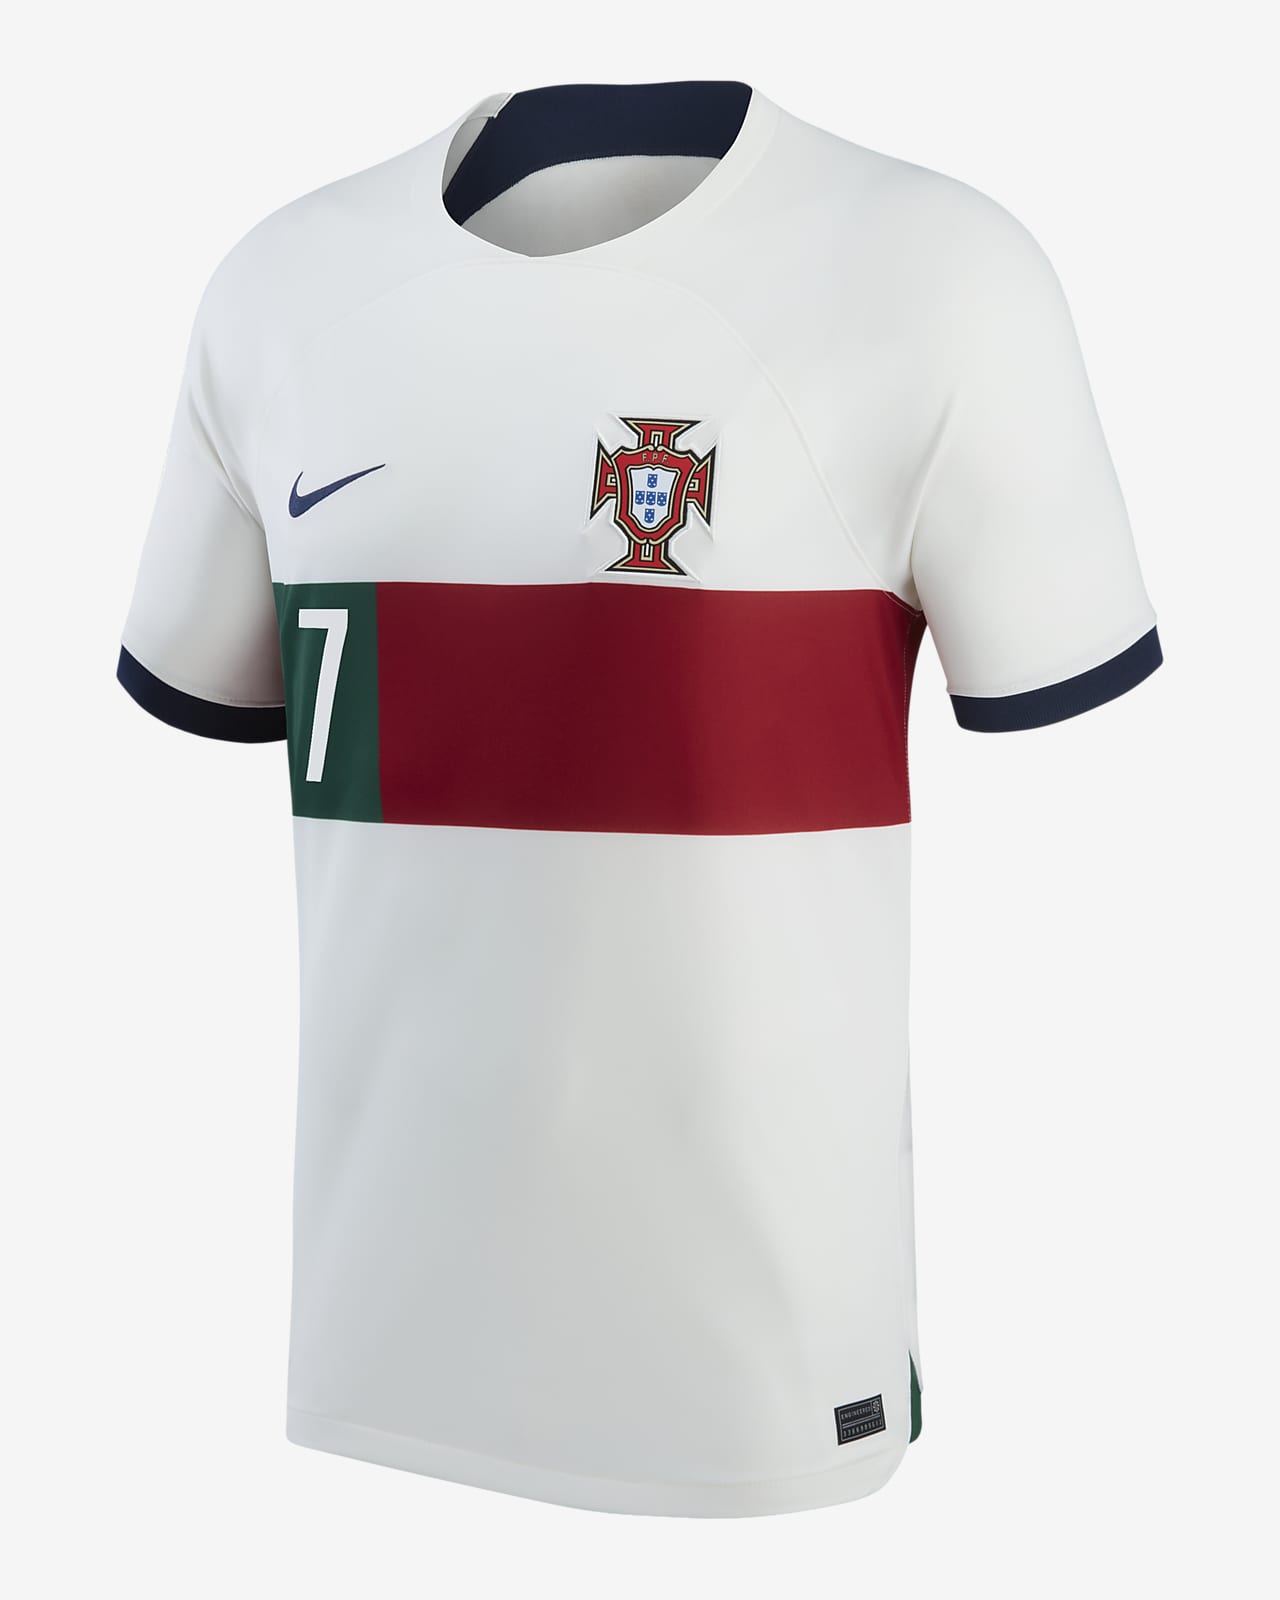 Jersey de Nike de selección nacional de Portugal visitante Stadium (Cristiano Ronaldo) para hombre. Nike.com